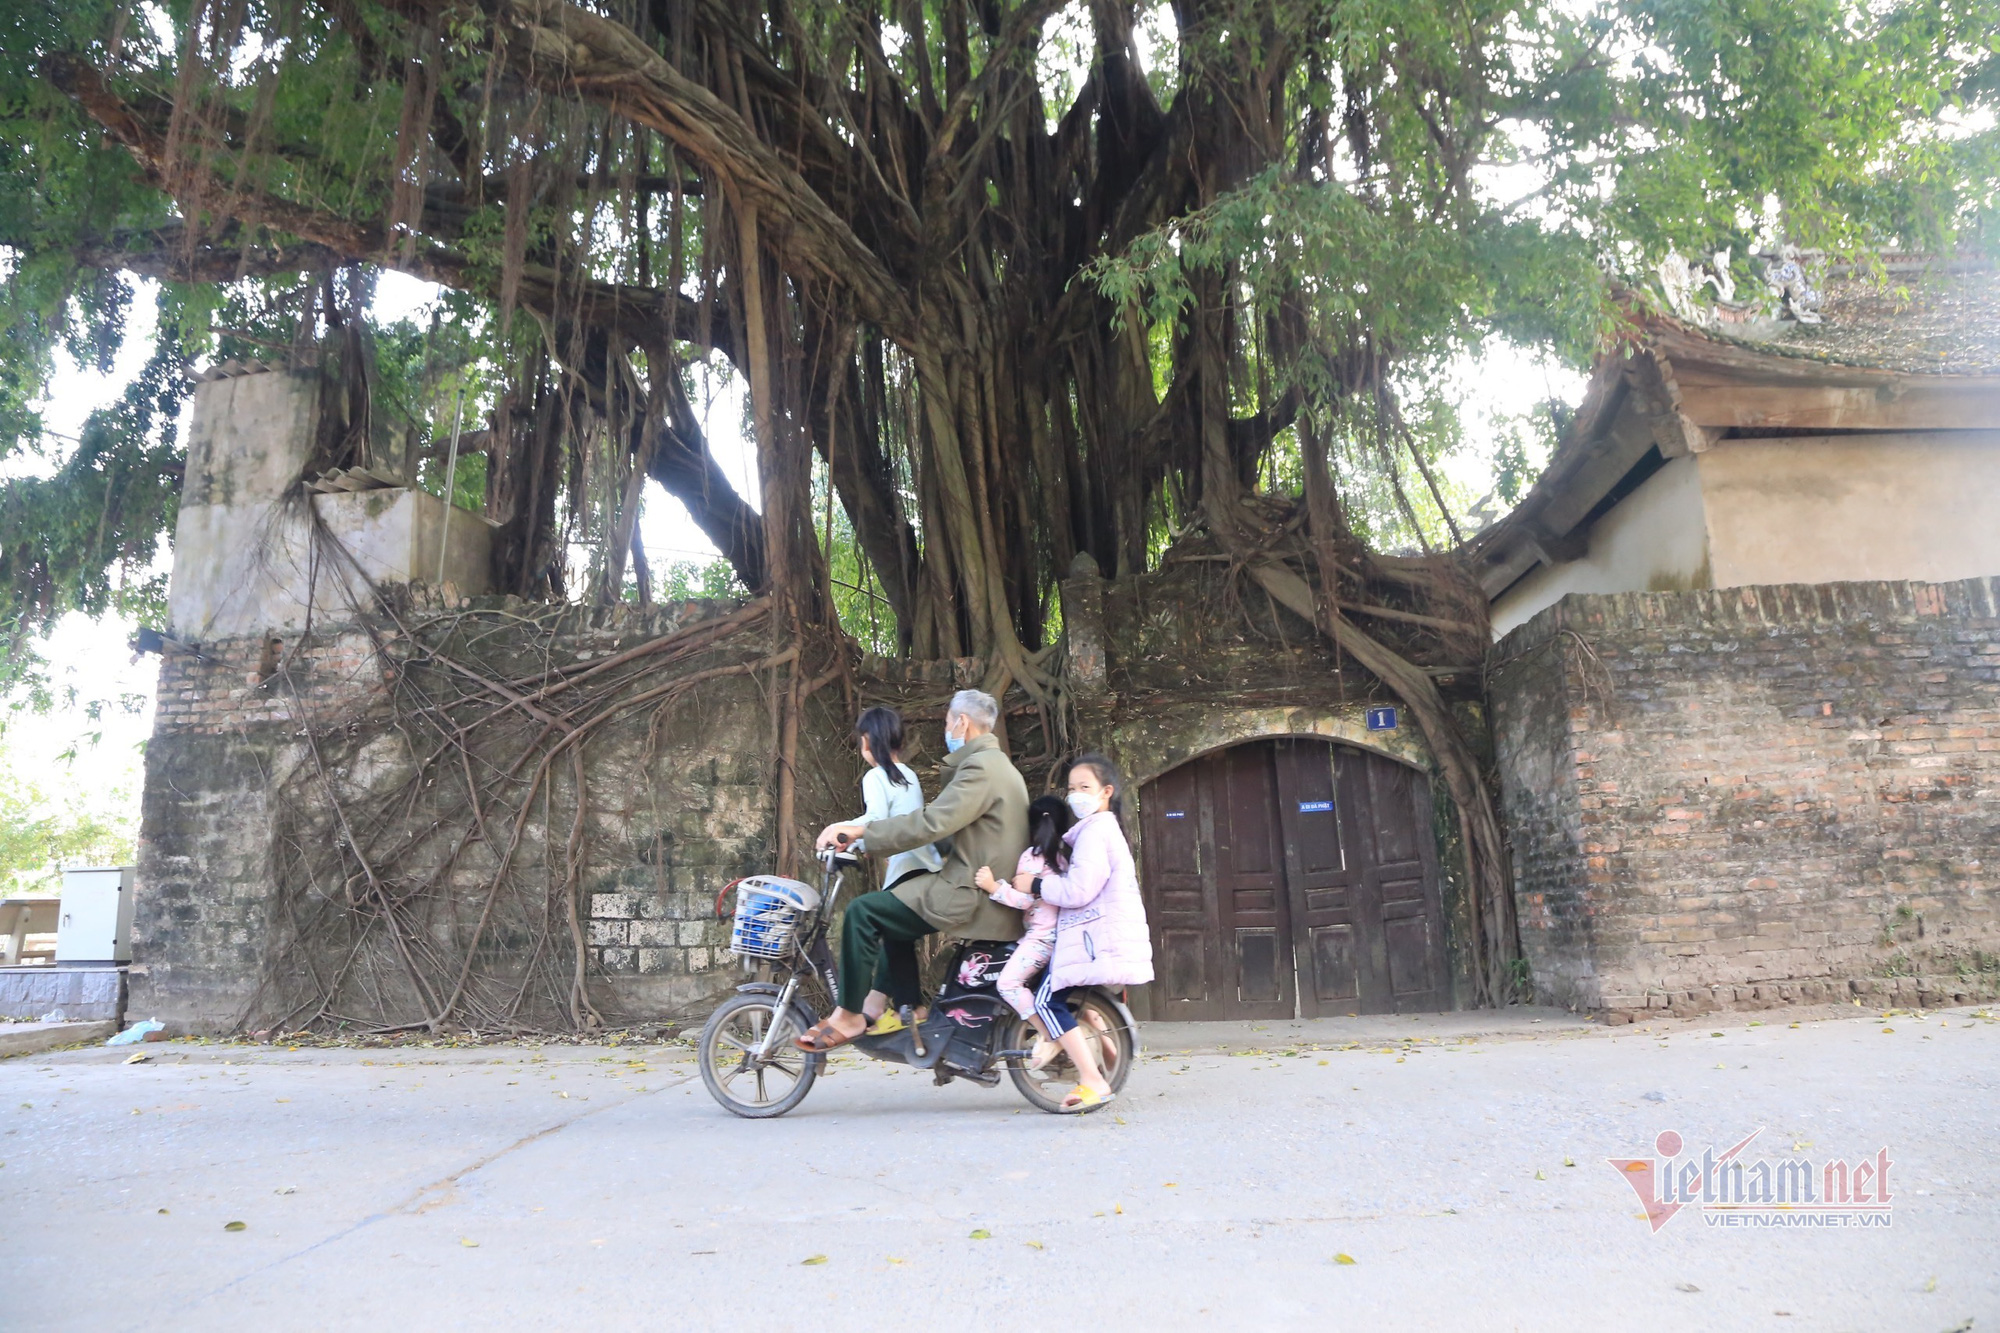 Cụ bà gần trăm tuổi ở Hà Nội xin hiến chùa cho làng - Ảnh 5.